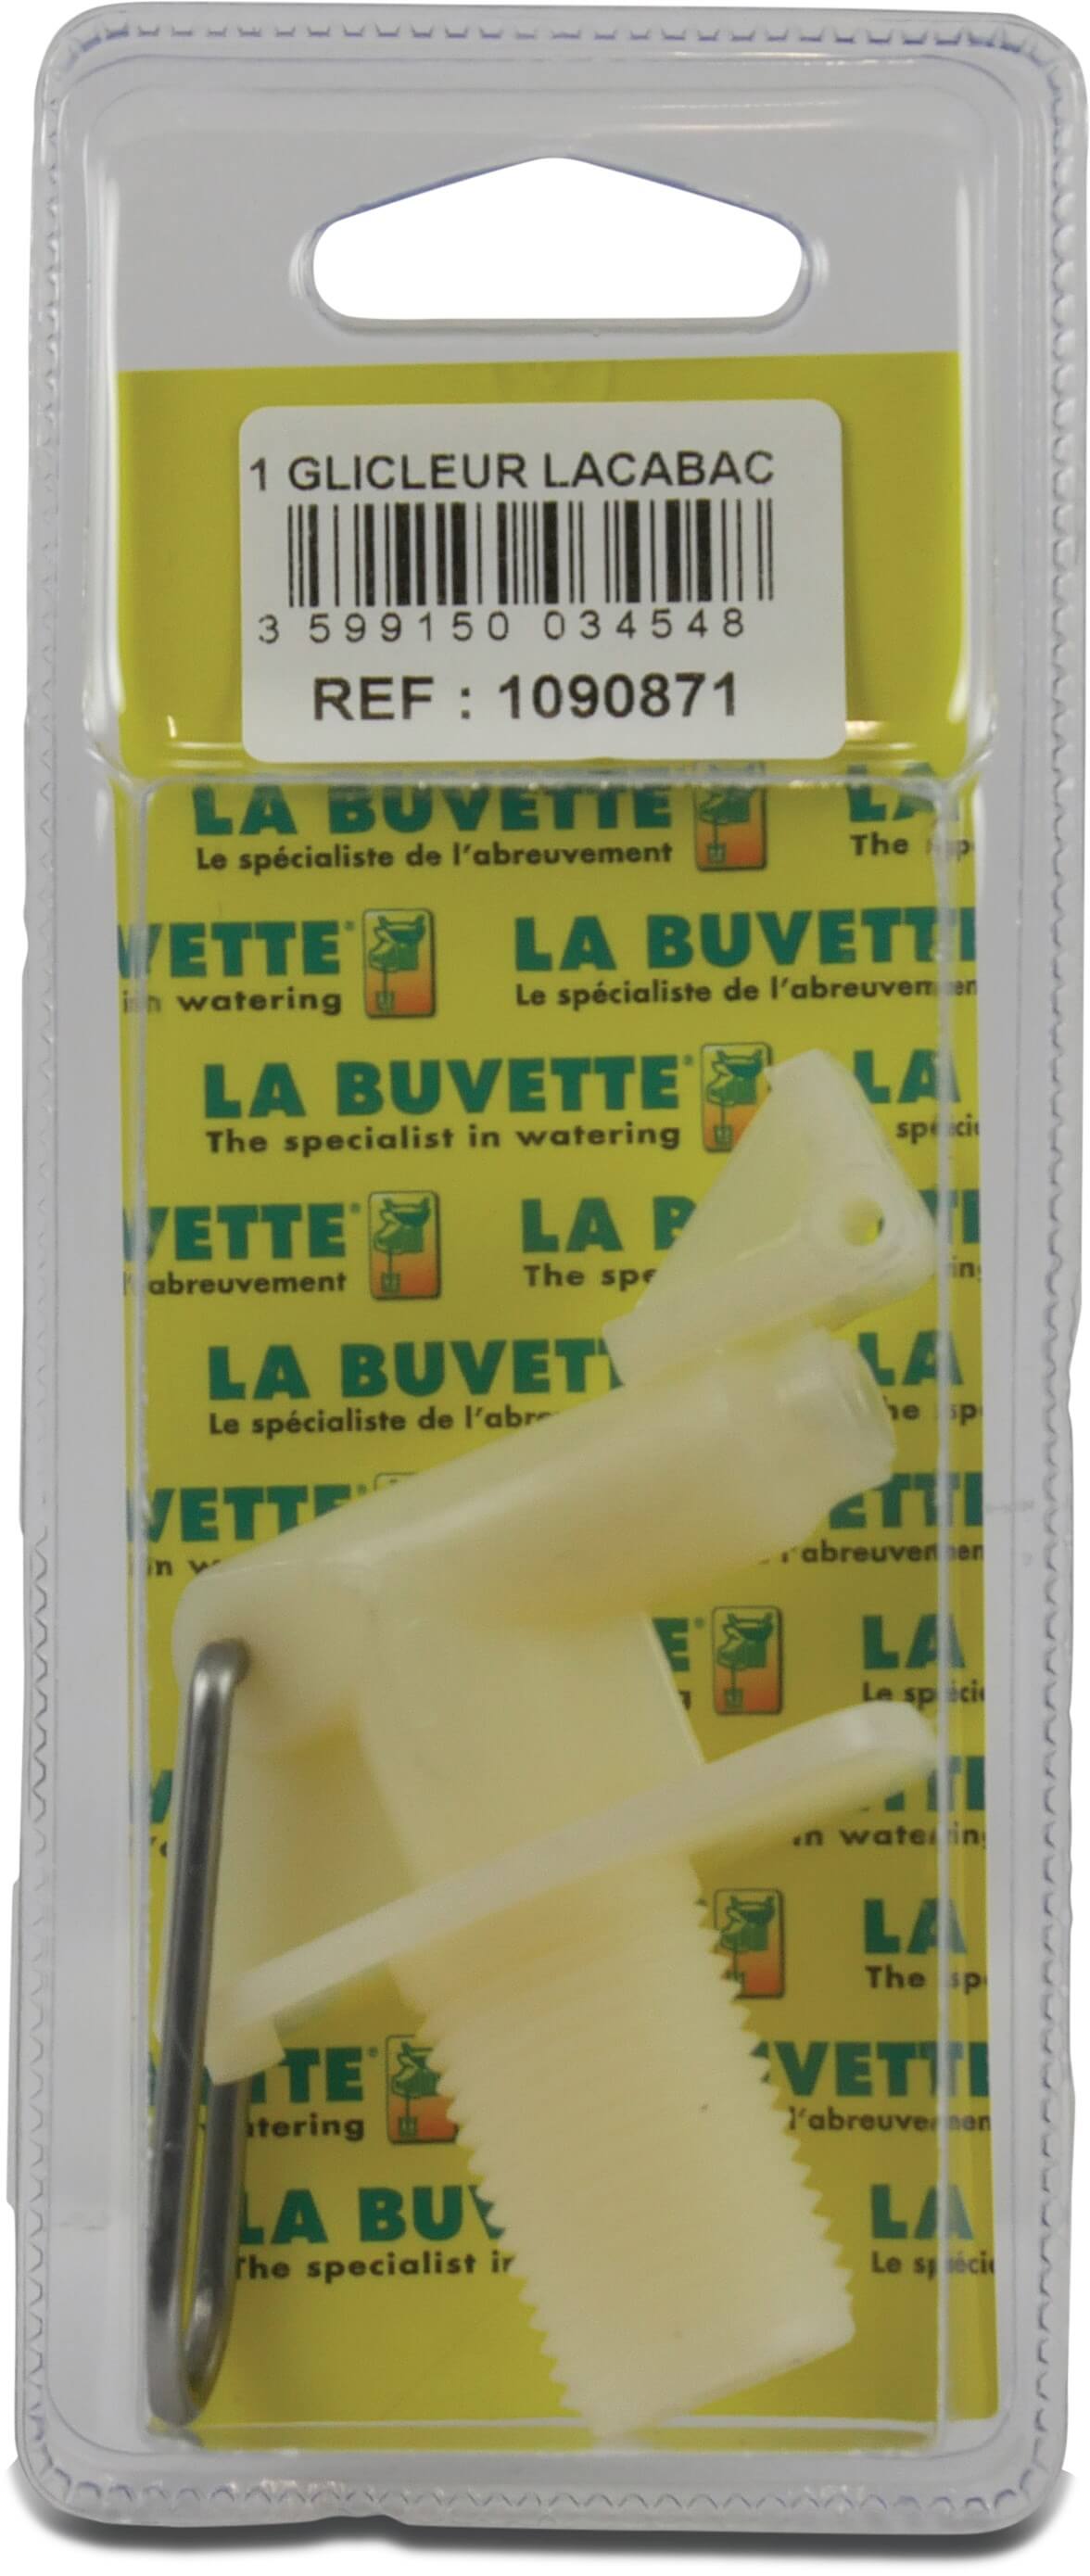 La Buvette Jet Lacabac blister pack